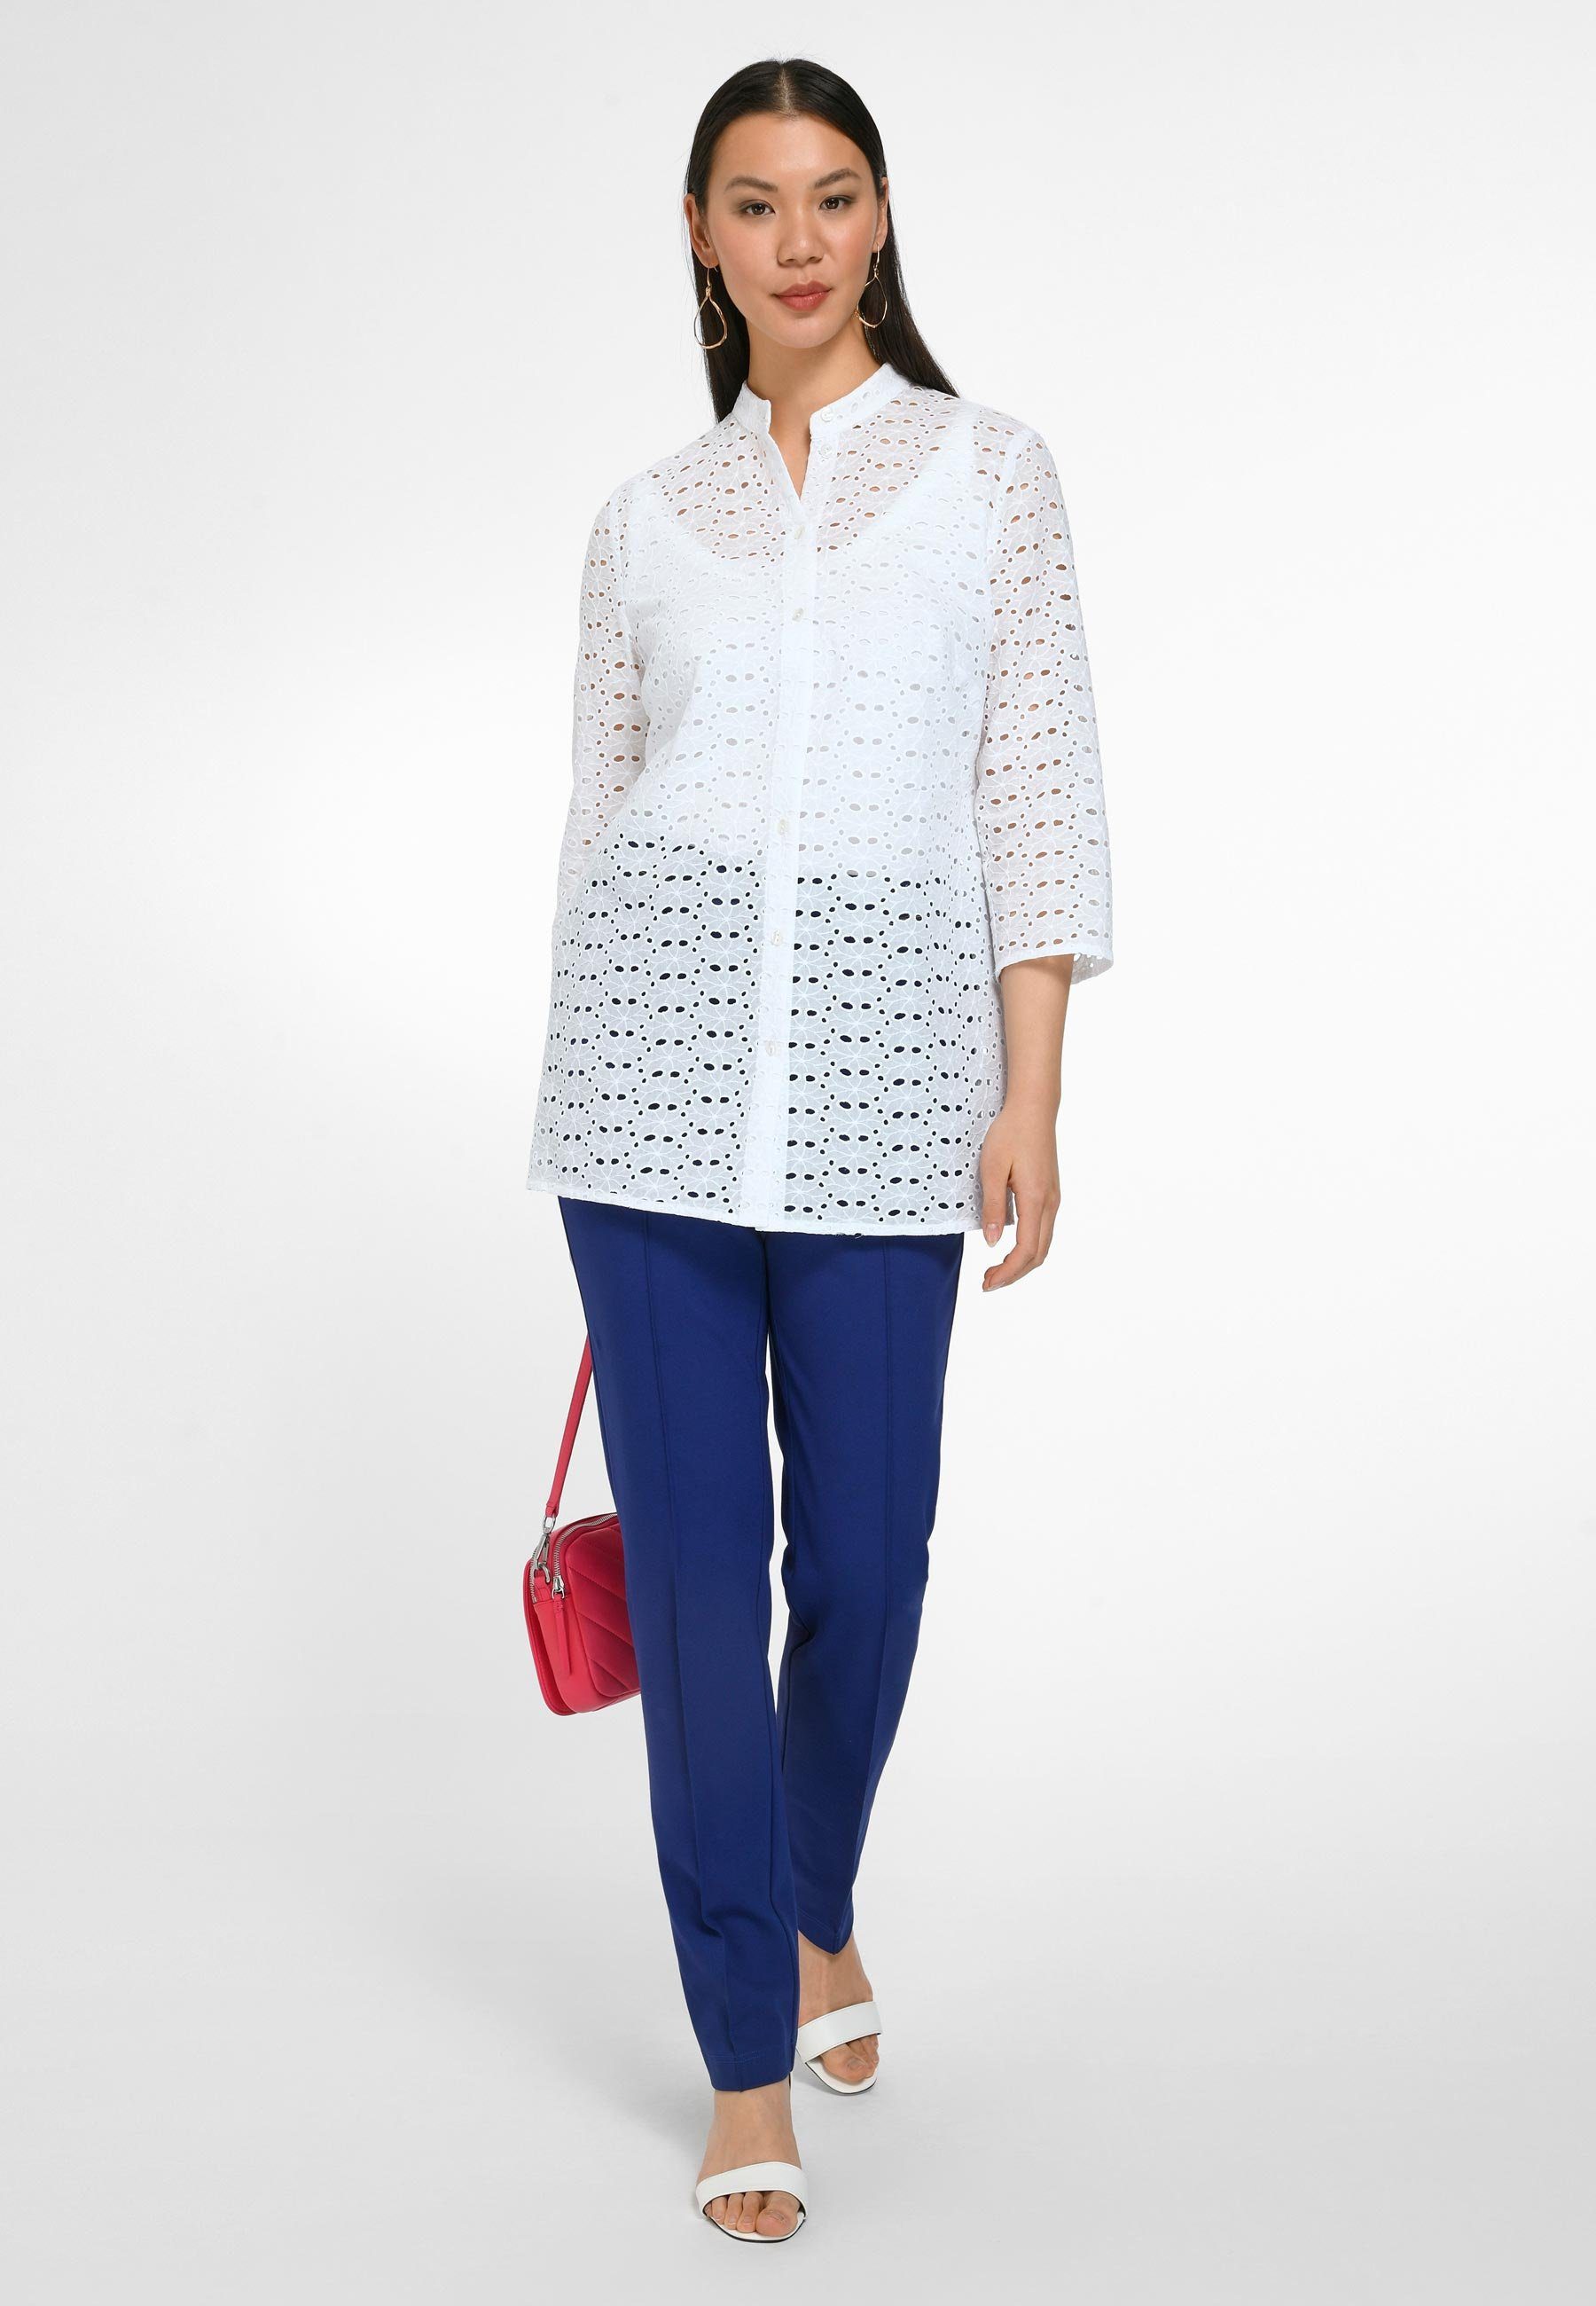 Anna Aura Klassische Design modernem mit Cotton Bluse